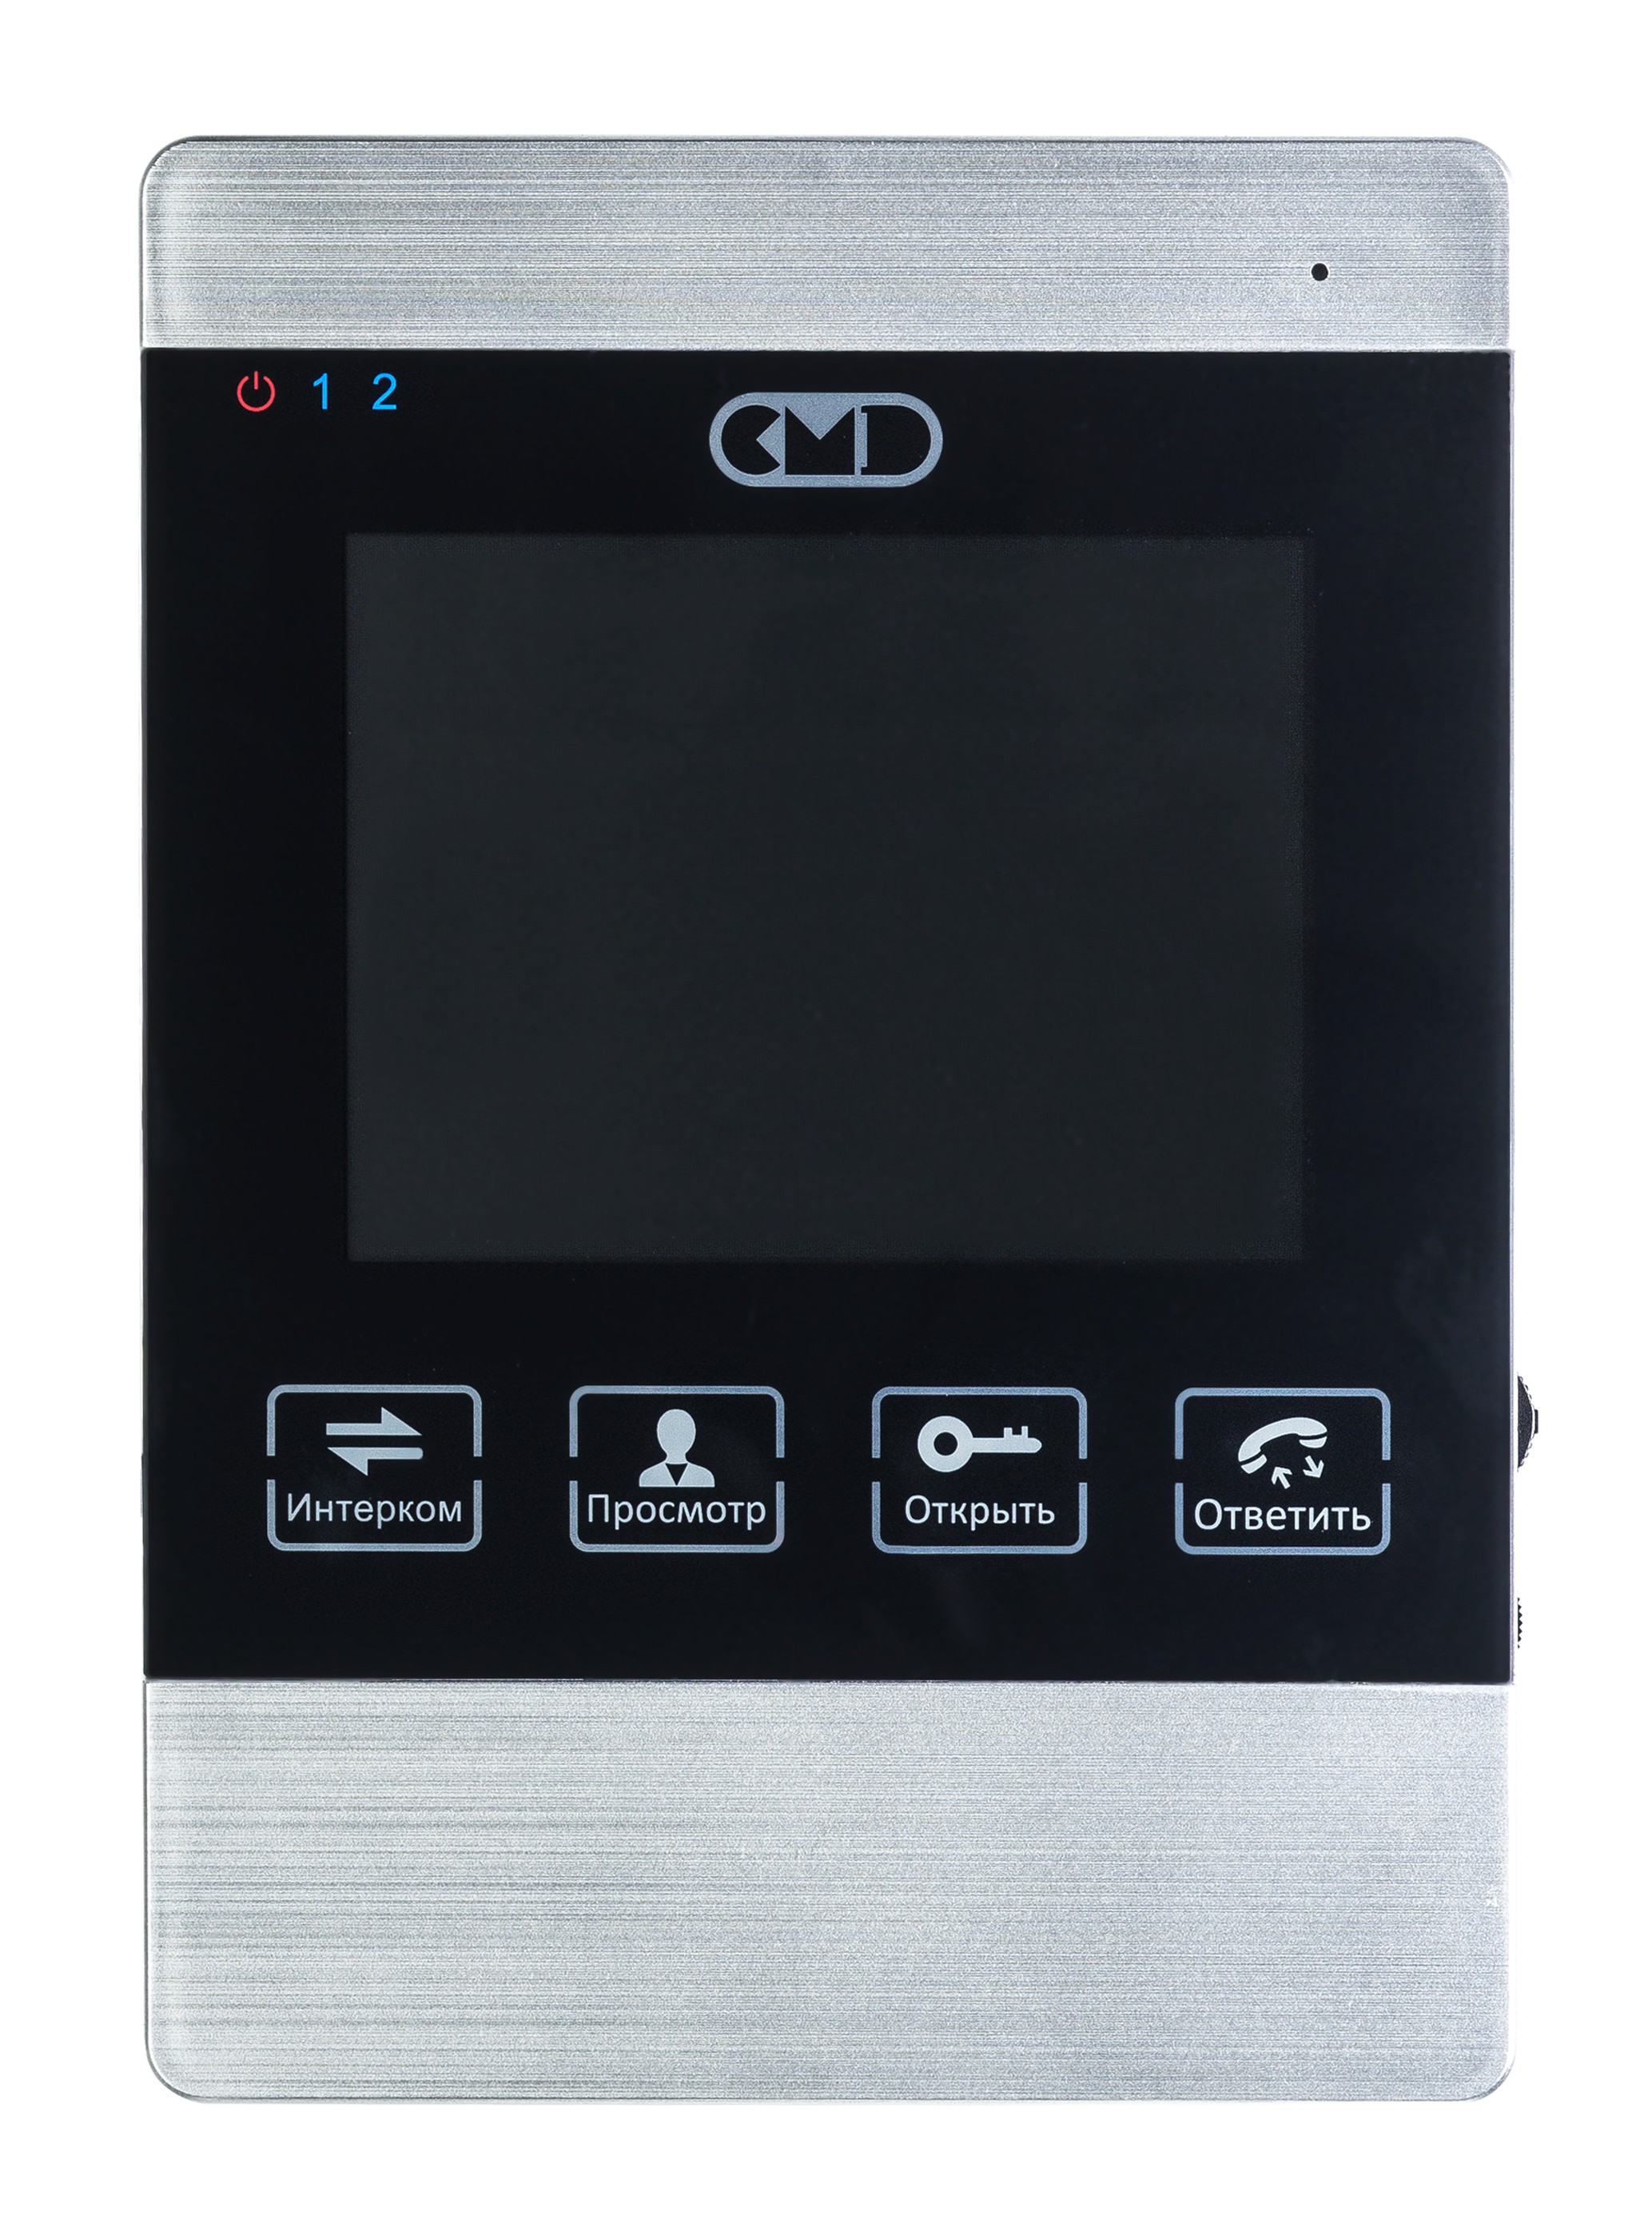  Элеком37. CMD-VD45M Цветной видеодомофон 4 дюйма, с записью по движению.